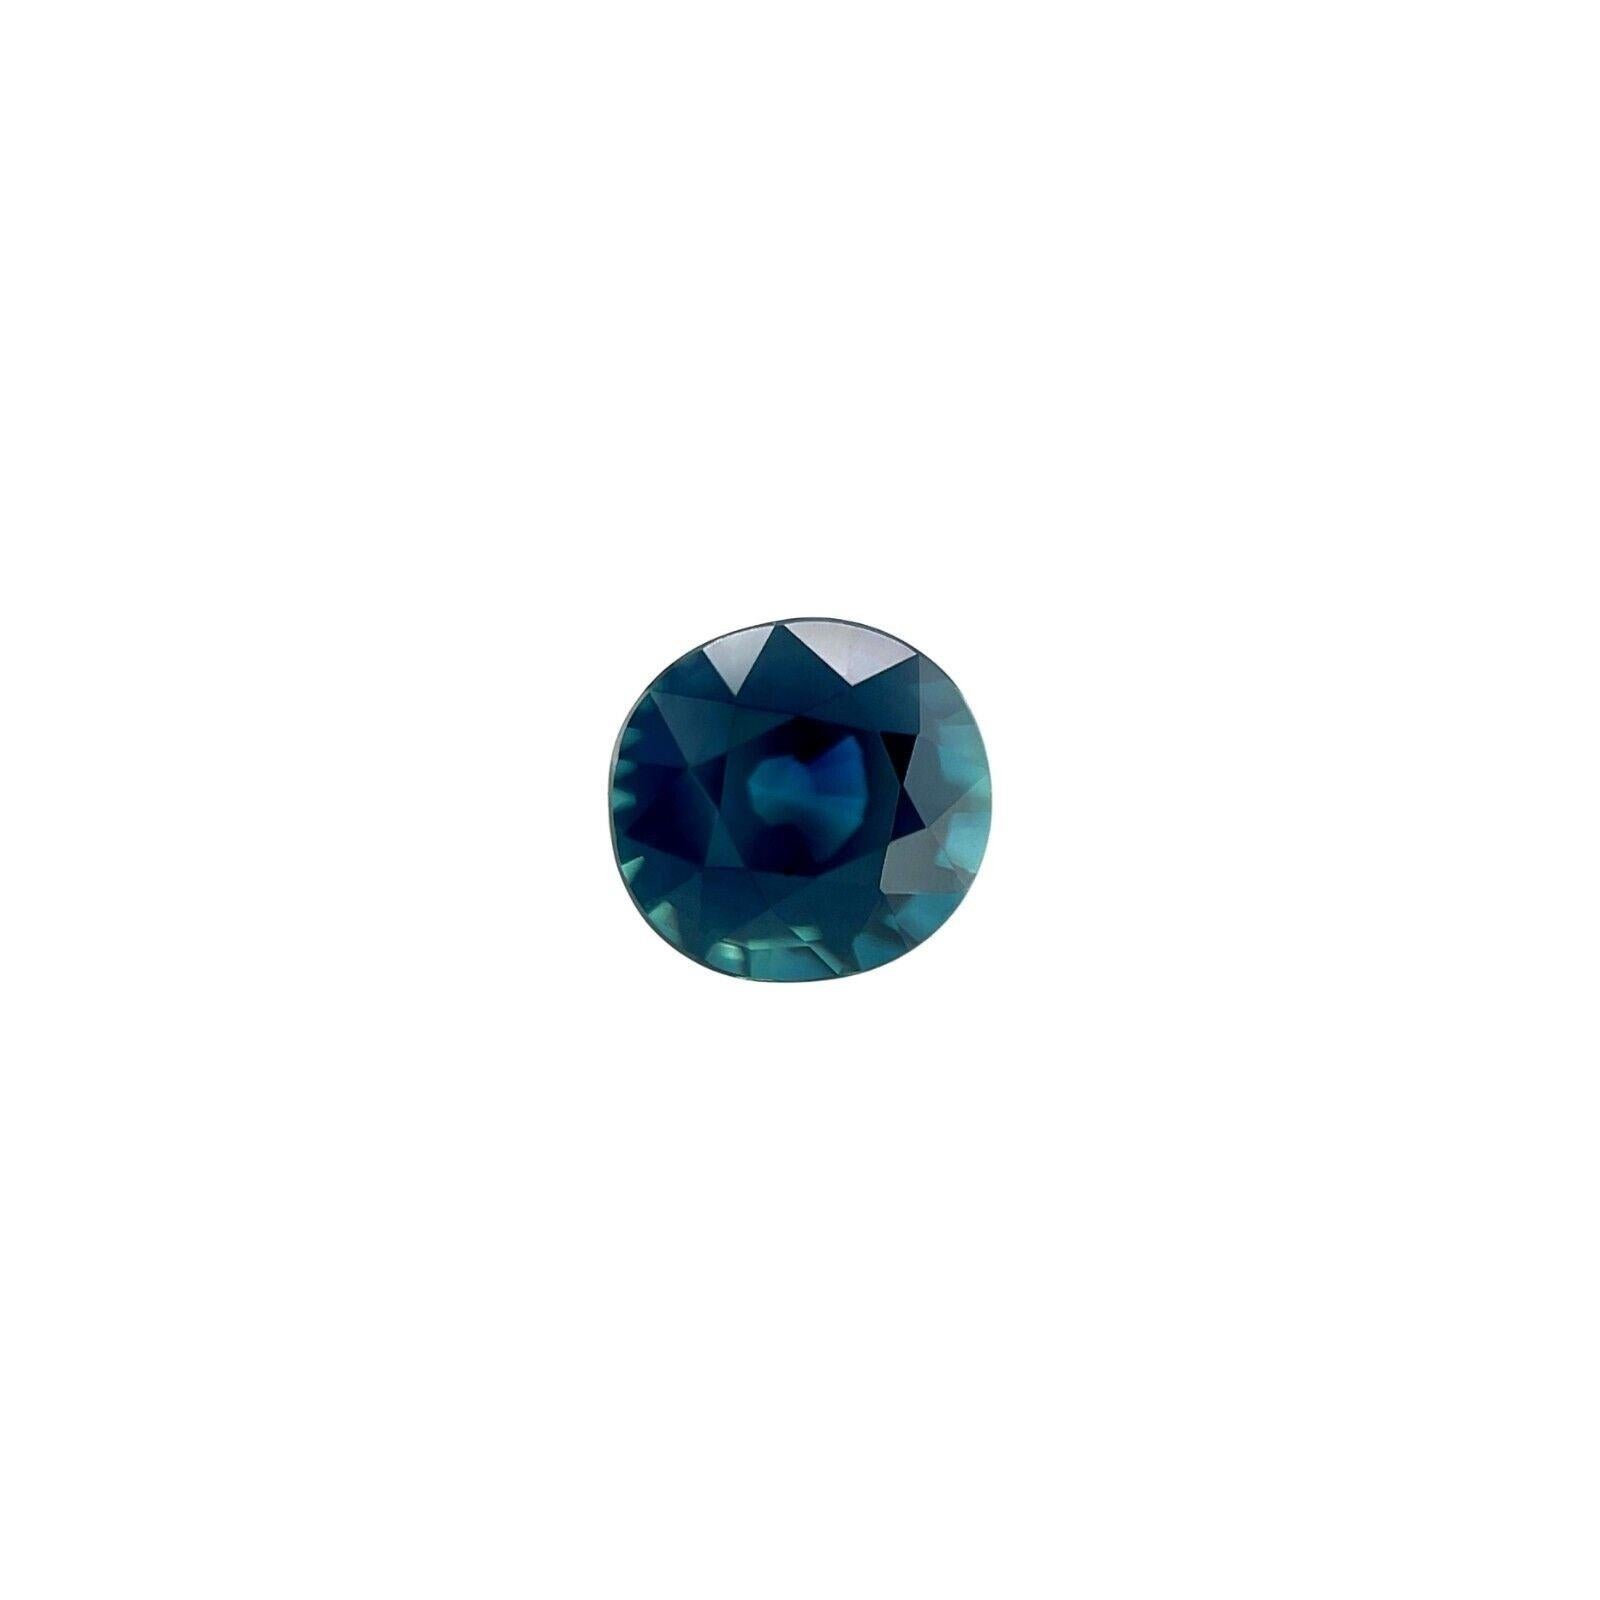 IGI zertifiziert 1.11Ct natürlichen blauen Saphir unbehandelt ungehärtet seltenen Edelstein

Natürlicher Deep Teal Blue Unbehandelter Saphir Edelstein IGI zertifiziert.
1,11 Karat Stein mit einer schönen tief 'teal' blauen Farbe und einem sehr guten